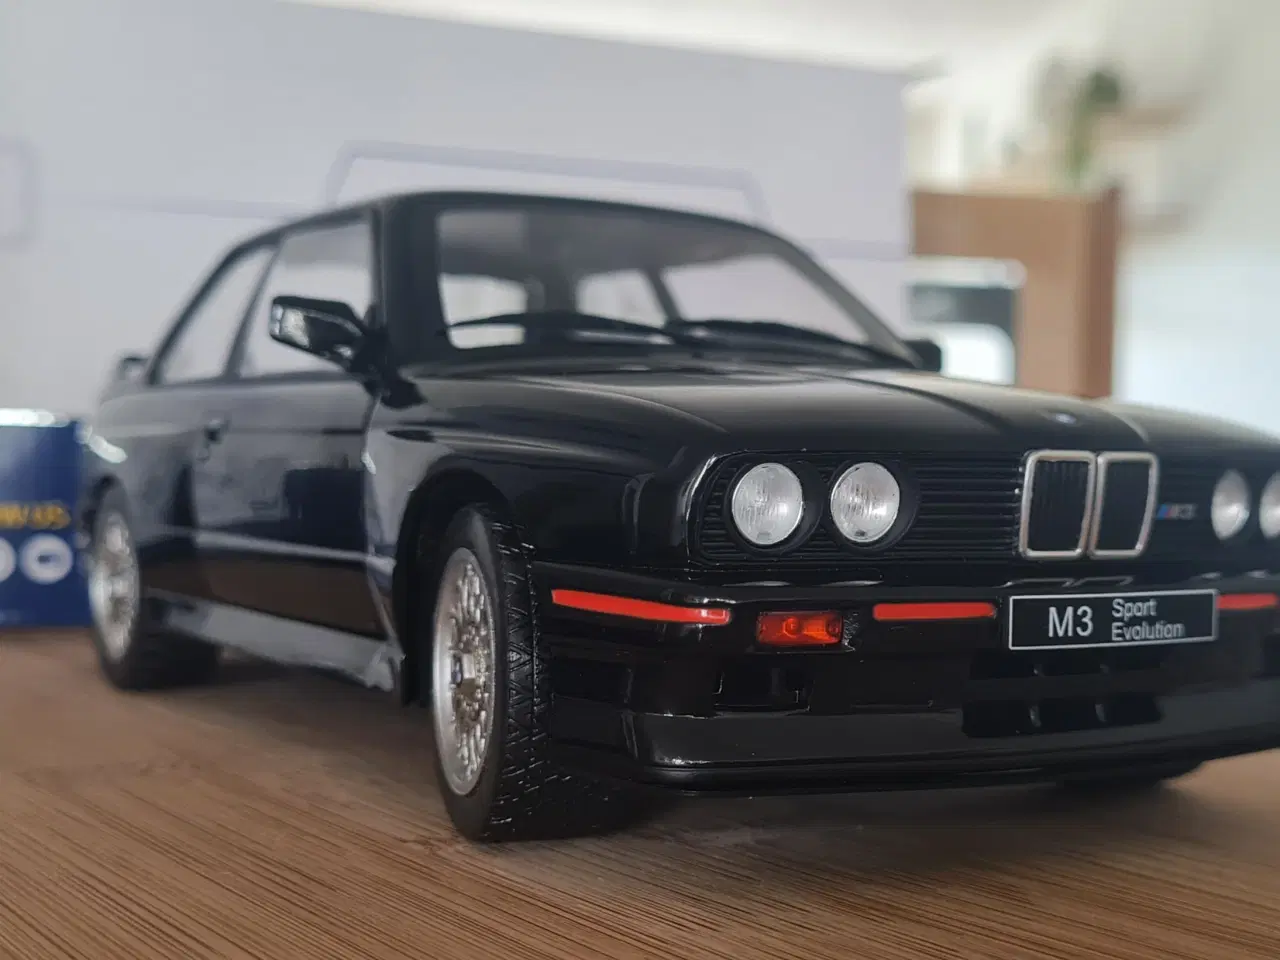 Billede 2 - BMW M3 E30 Sport Evolution 1990 1/18 skala 